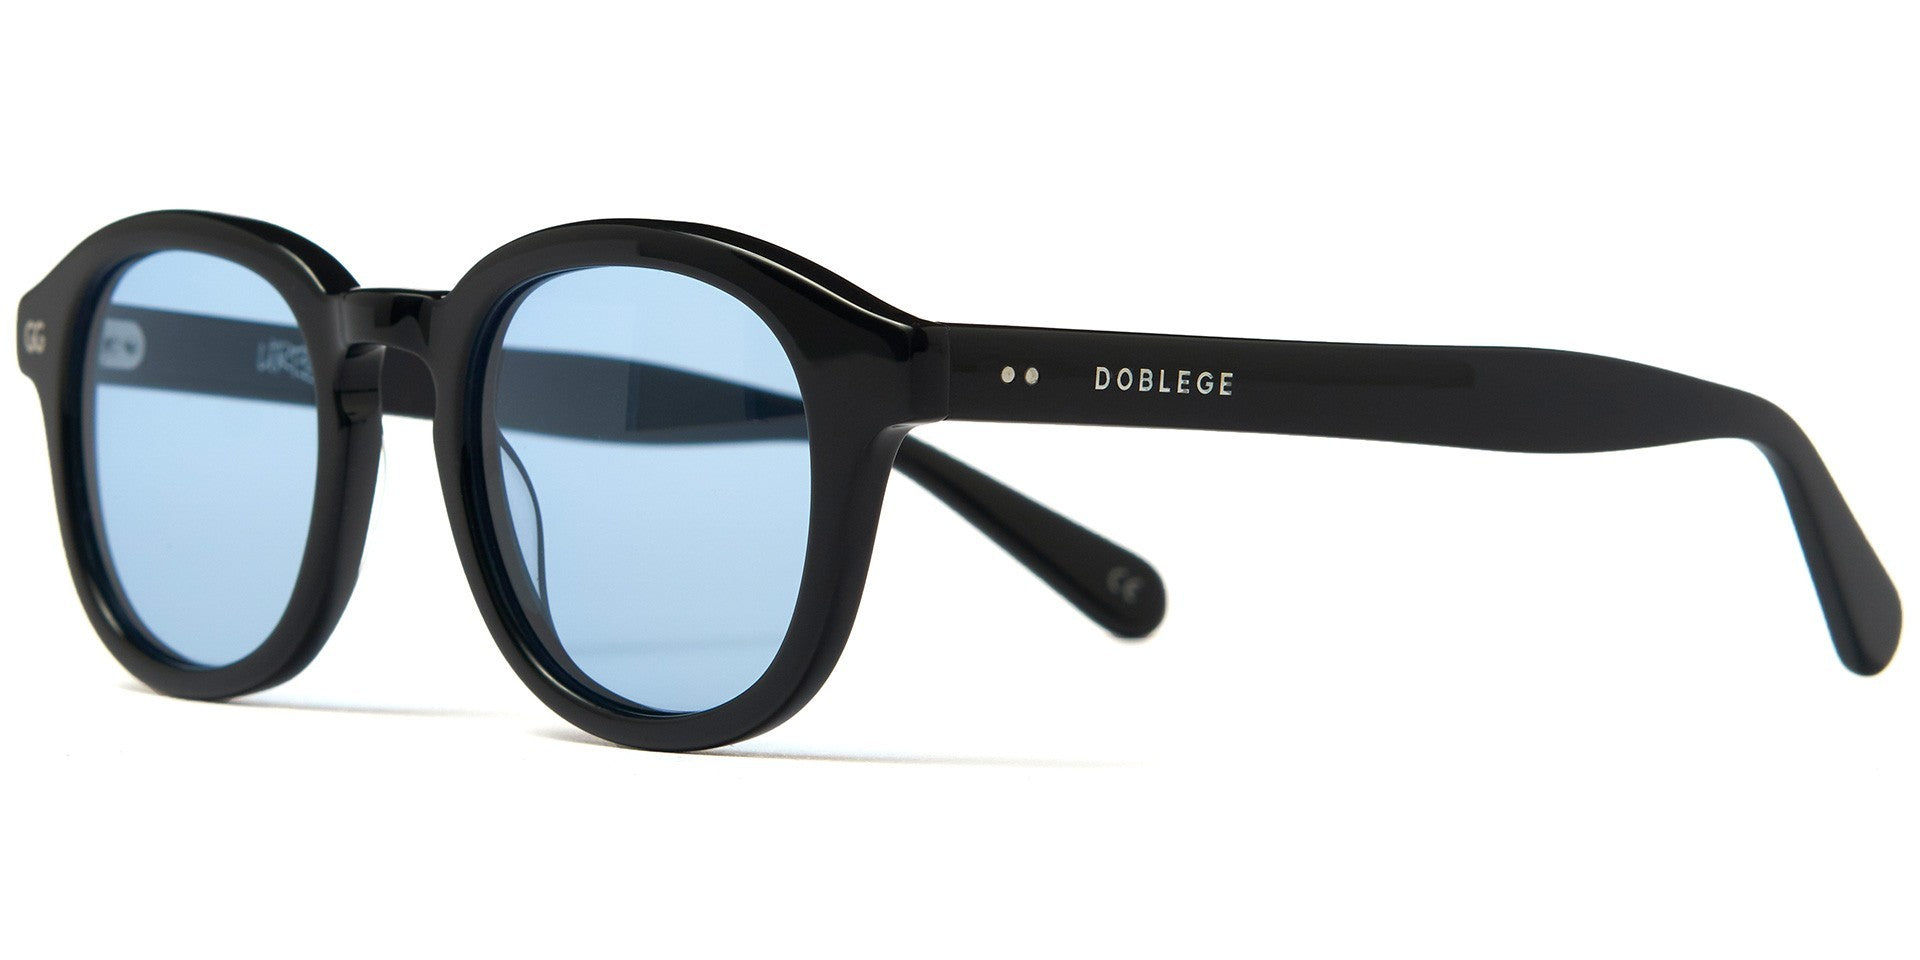 Gafas DobleGE blue odissey - INDOMITO108